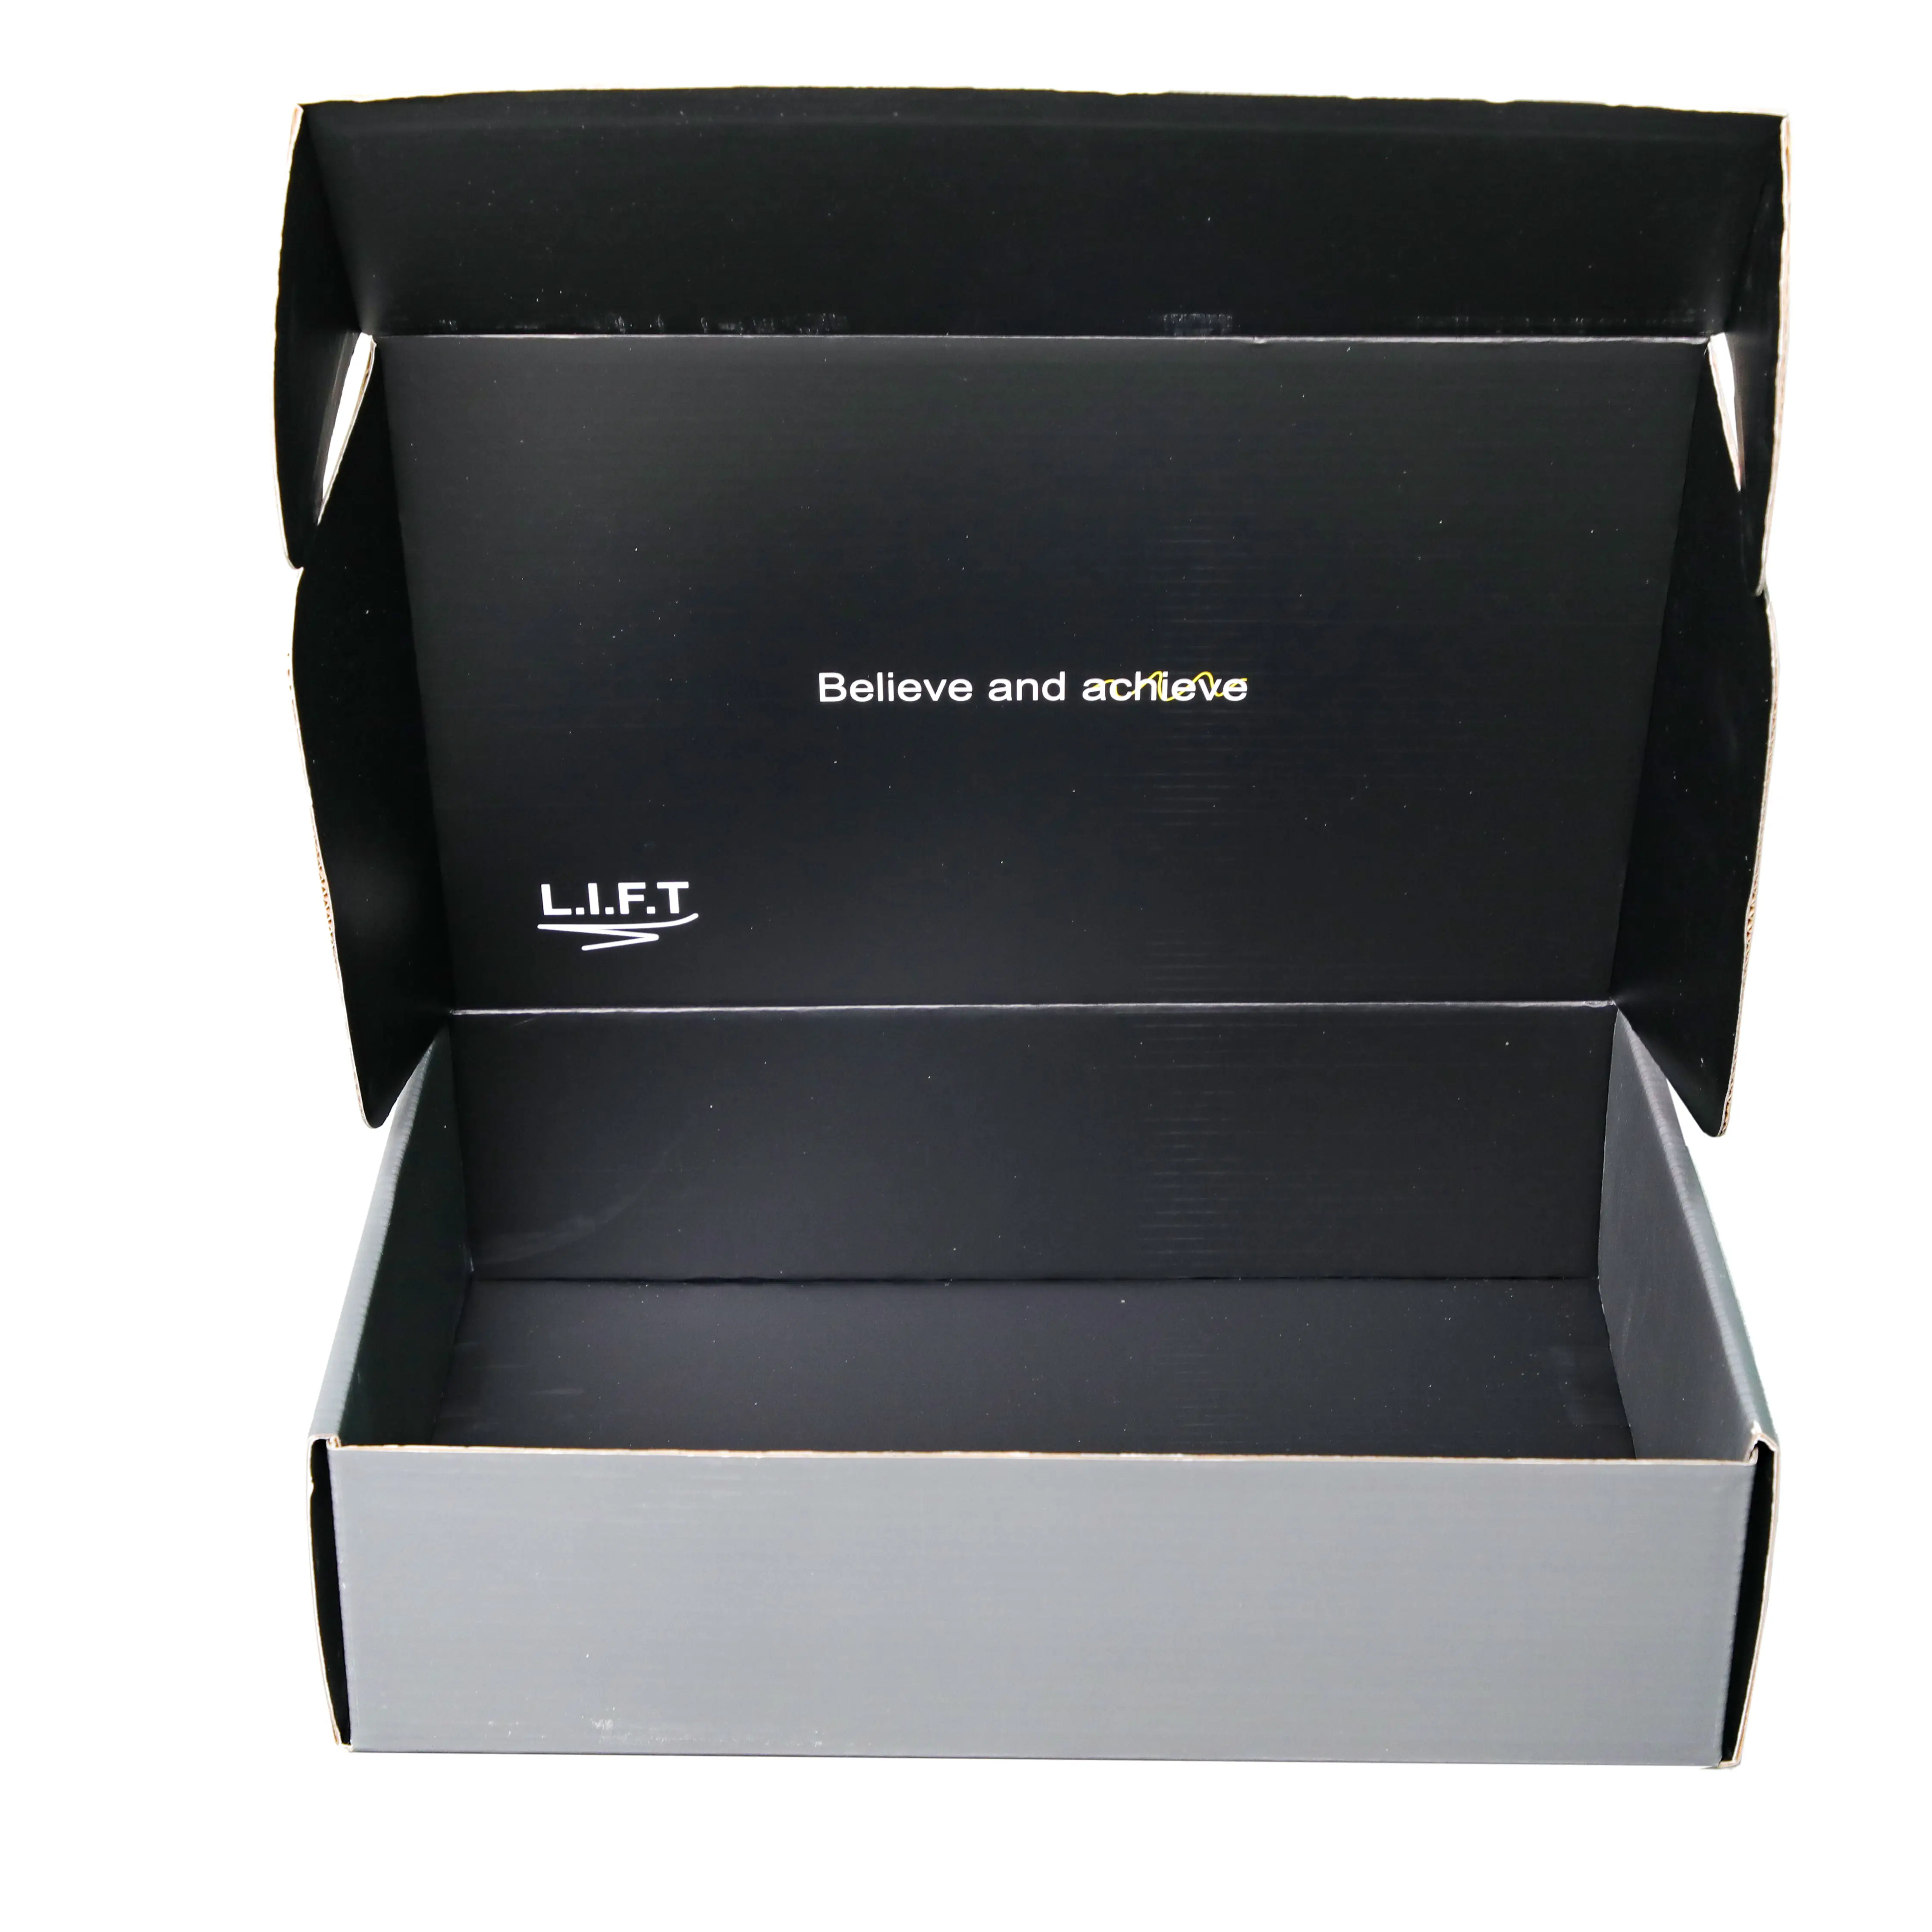 Uhren Box Verpackung tragbare Lüfter halter Gerät Hals halter schwarz Verpackungs box 300g beschichtetes Papier schwarz Versand kartons